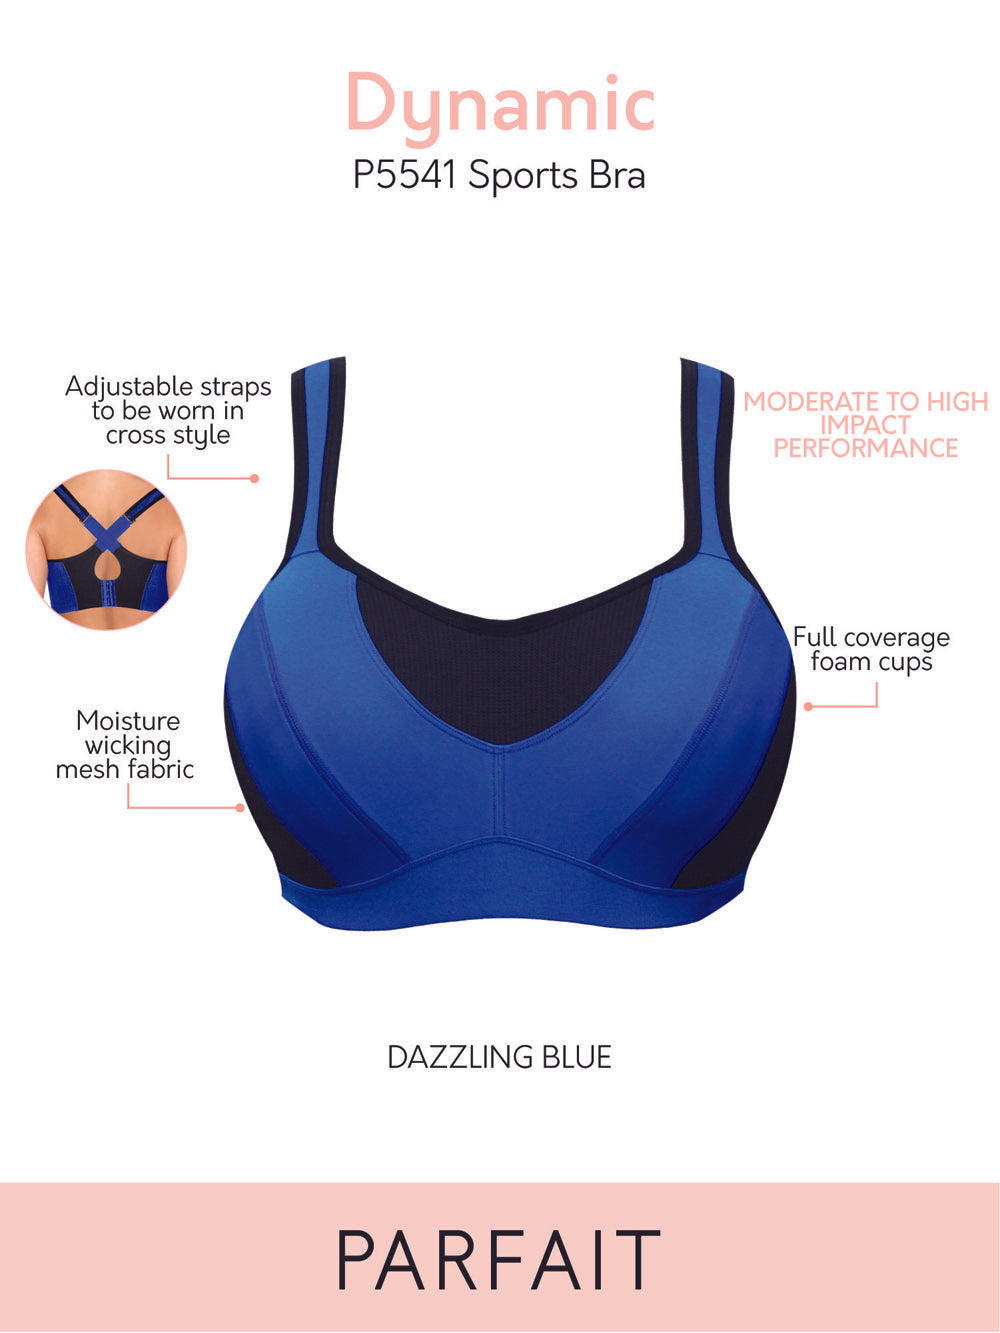 Parfait Bras Parfait Dynamic Padded Performance Sports Bra - Dazzling Blue